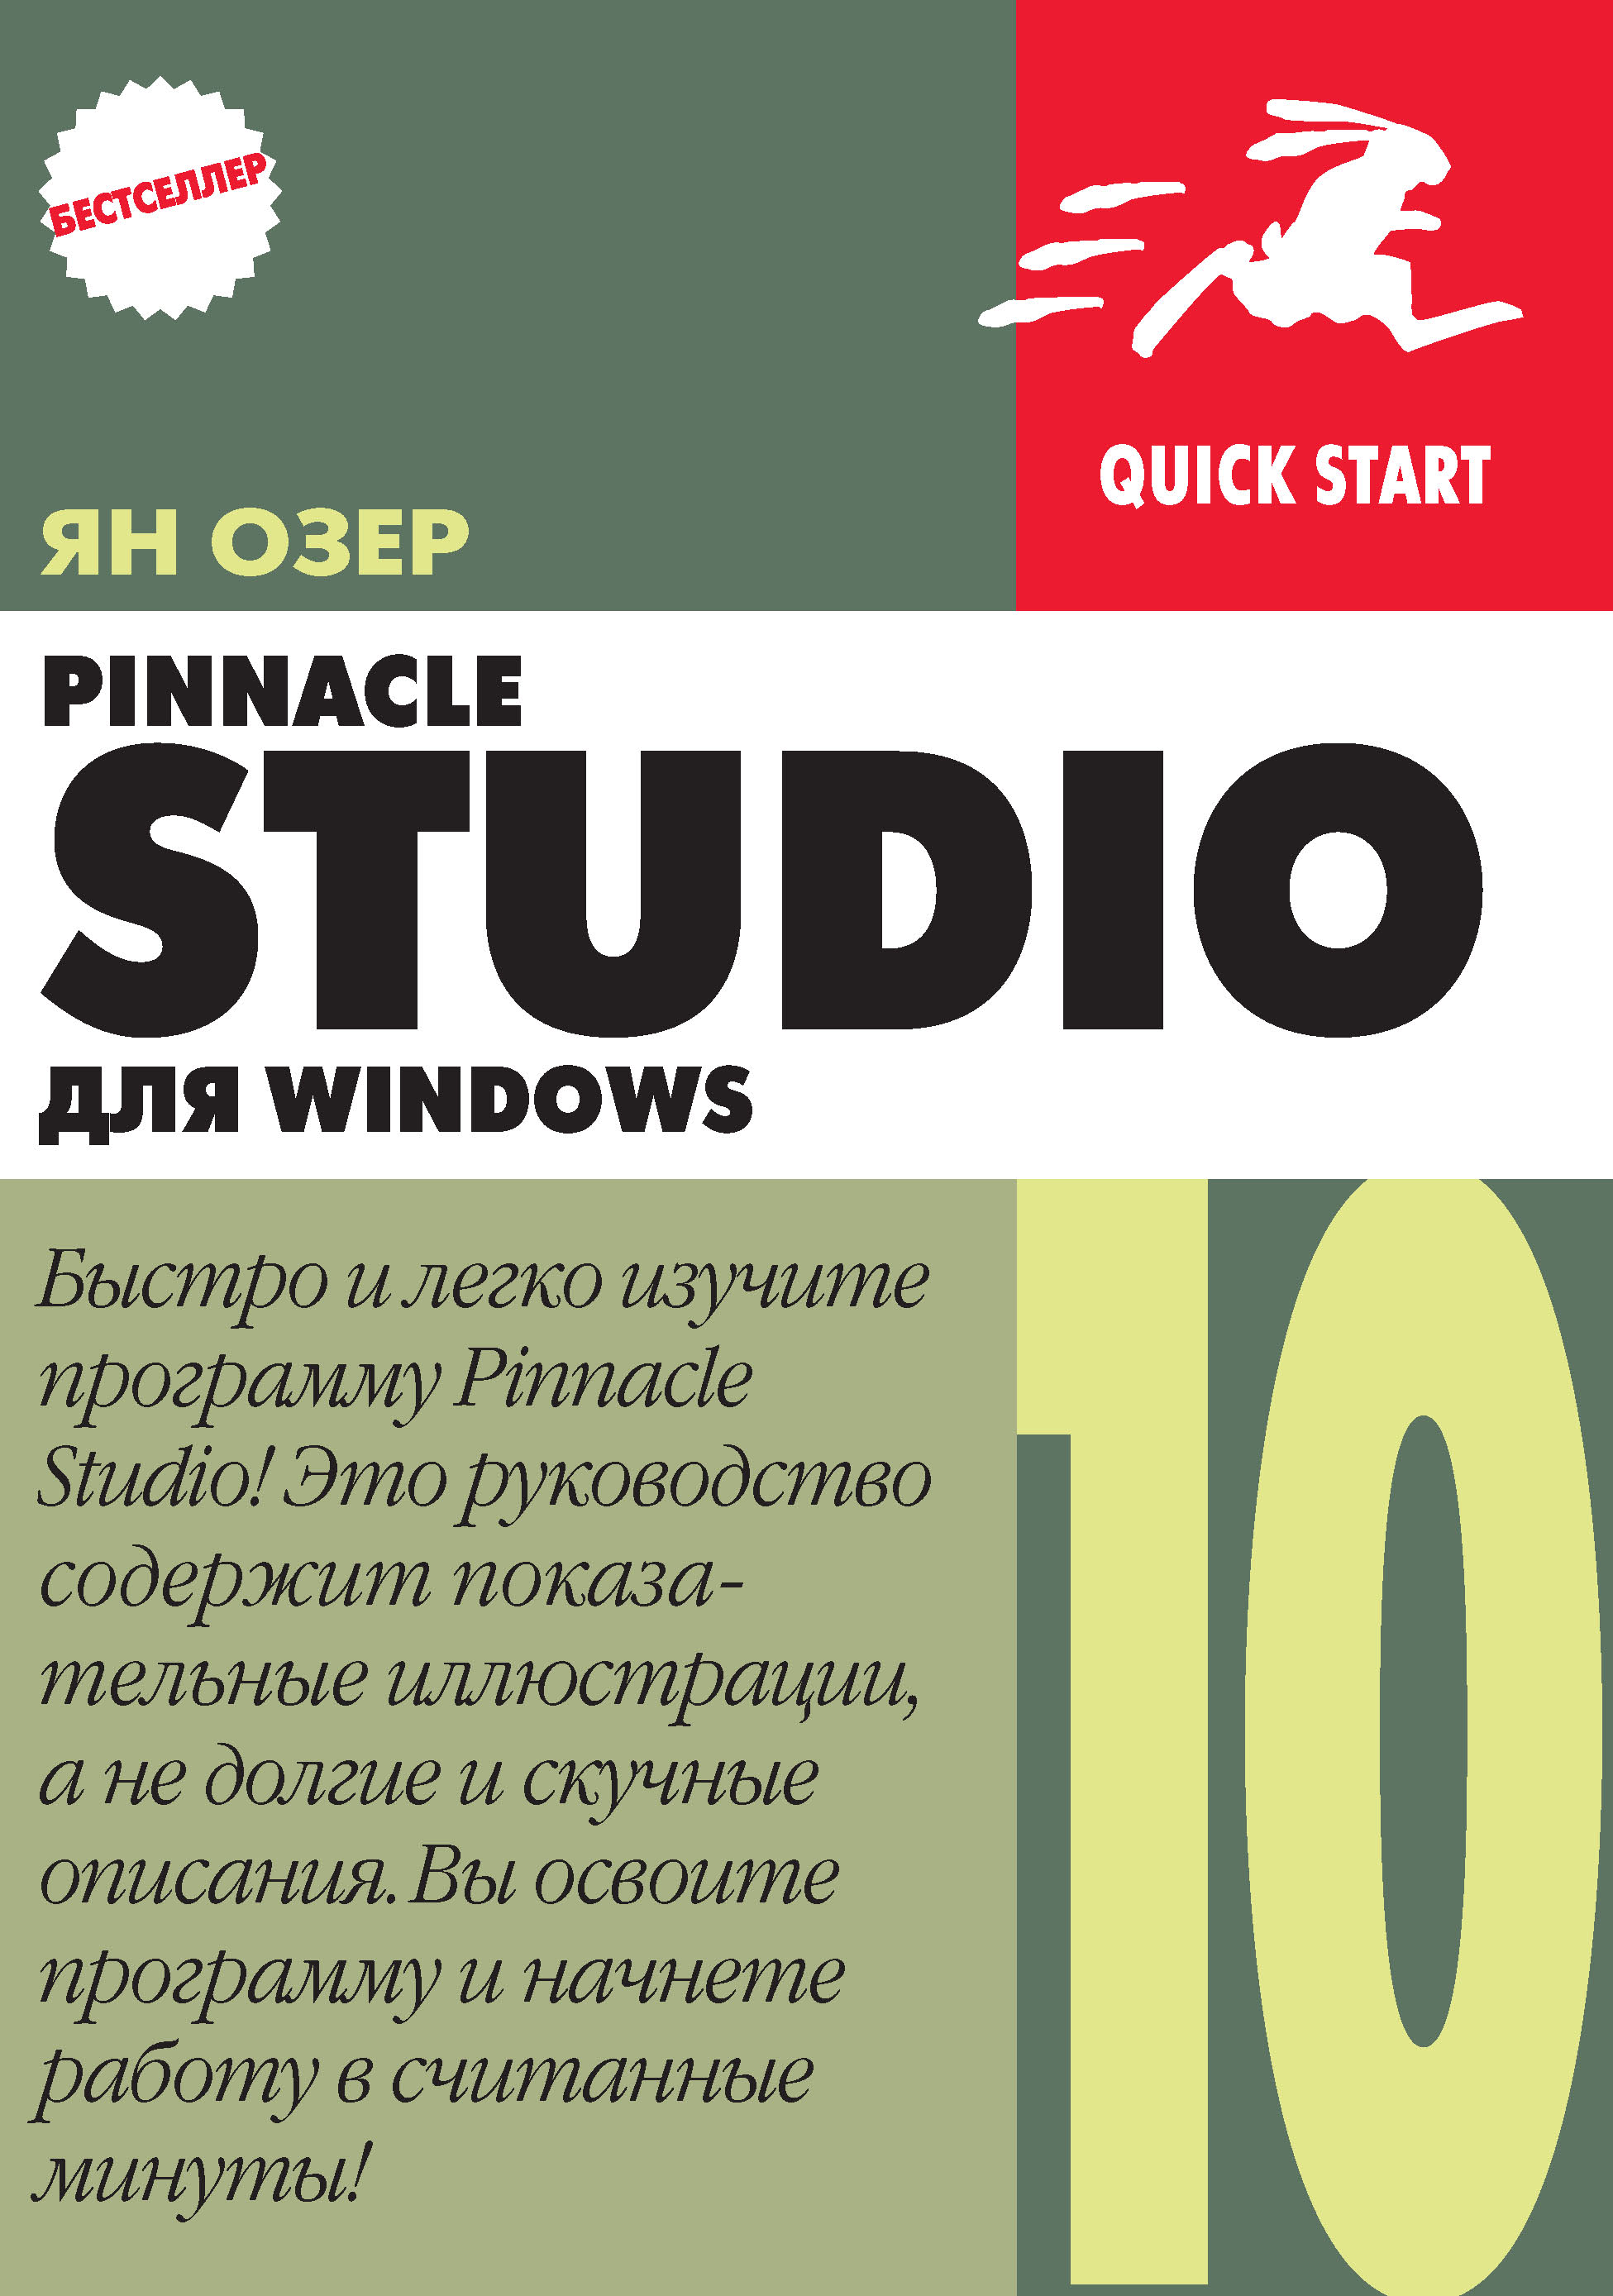 Книга  Pinnacle Studio 10 для Windows созданная Ян Озер, А. И. Осипов может относится к жанру зарубежная компьютерная литература, зарубежная справочная литература, программы, руководства. Стоимость электронной книги Pinnacle Studio 10 для Windows с идентификатором 6251303 составляет 144.00 руб.